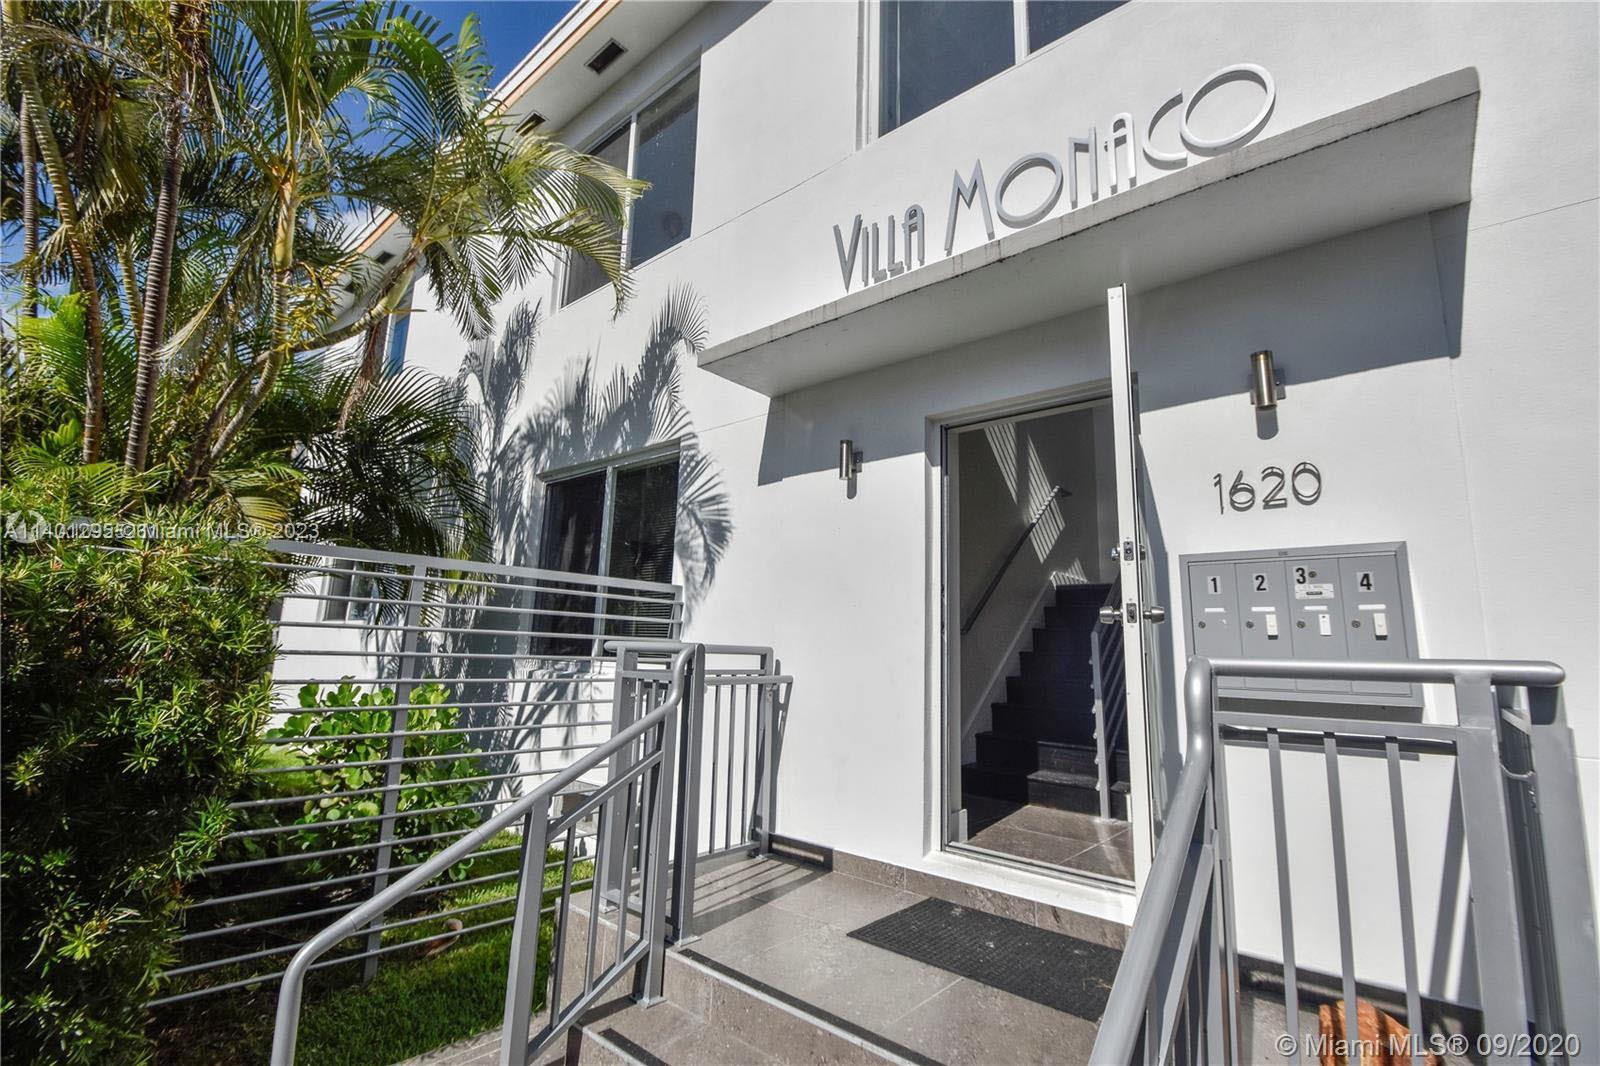 Rental Property at 1620 Bay Rd, Miami Beach, Miami-Dade County, Florida -  - $3,250,000 MO.